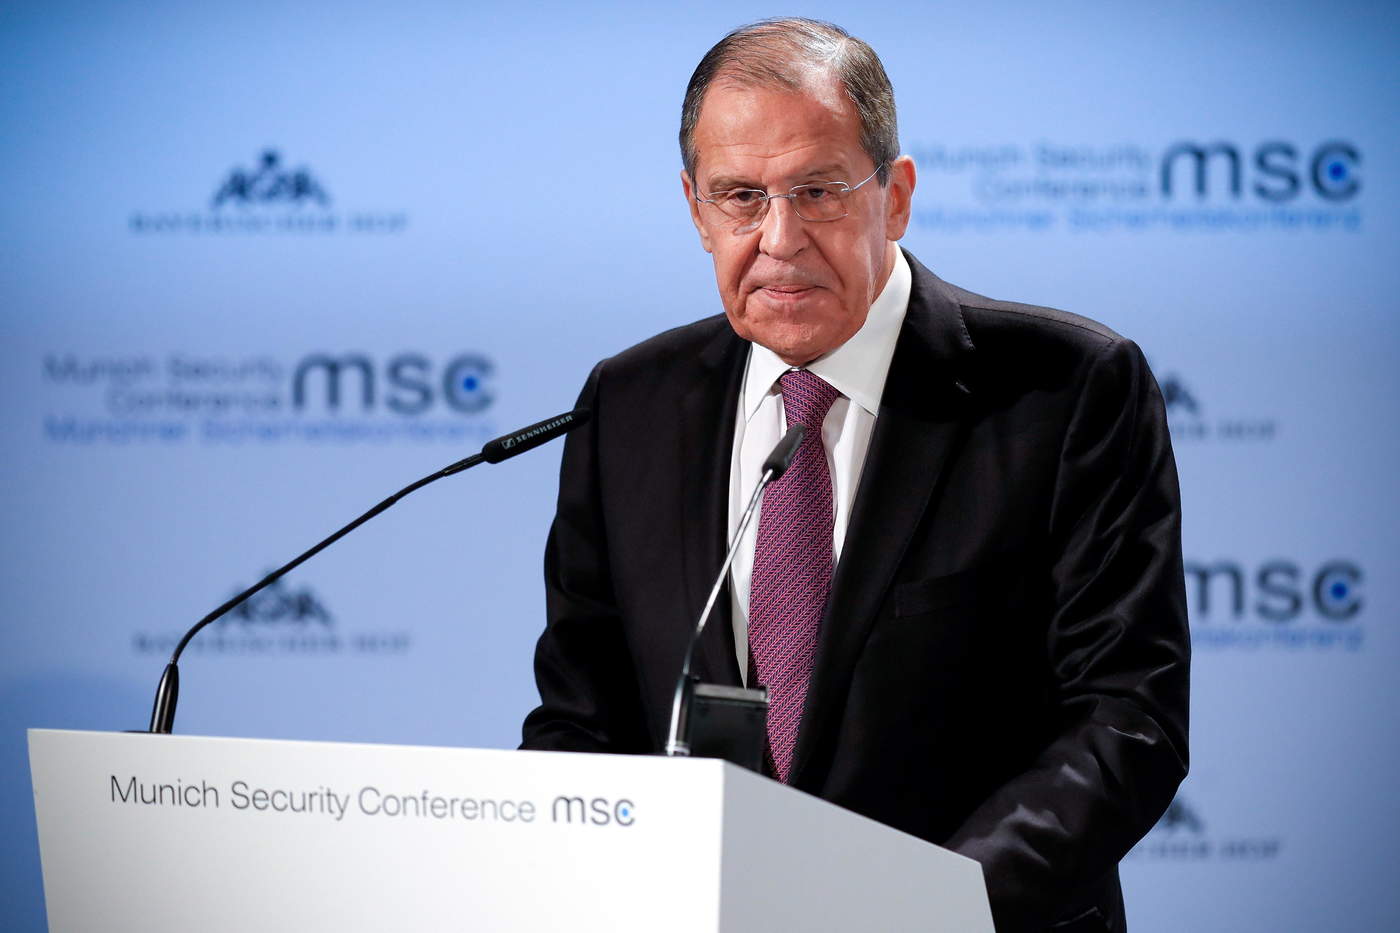 Empresas de la UE están 'cansadas' de confrontación con Rusia: Lavrov